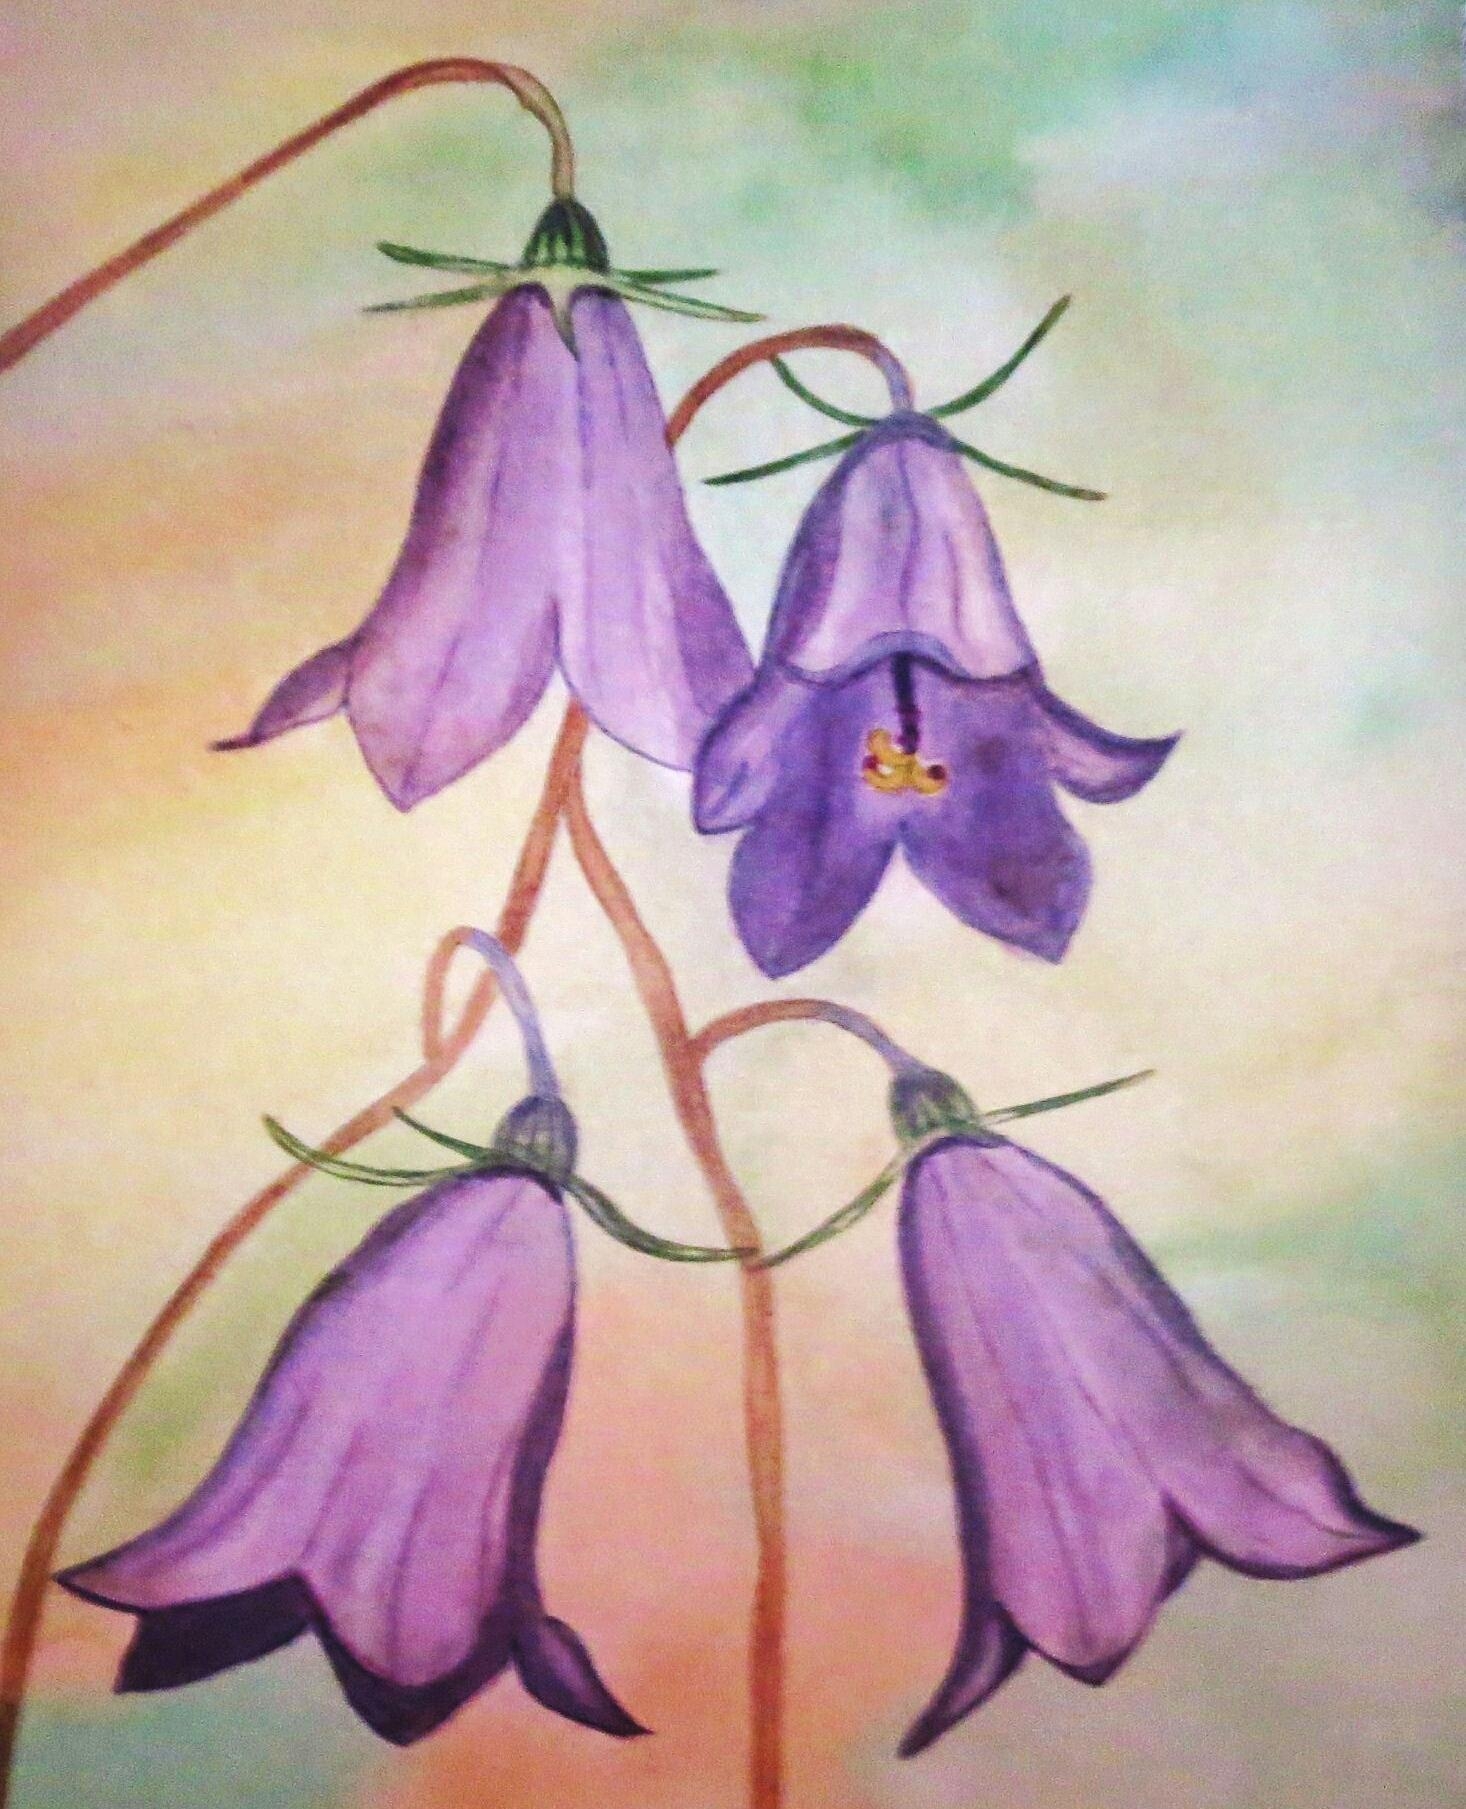 Glockenblümchen ♡
#acryl #leinwand #kunst #flowers #diy #artbyrena #www.instagram.com/art_by_rena 